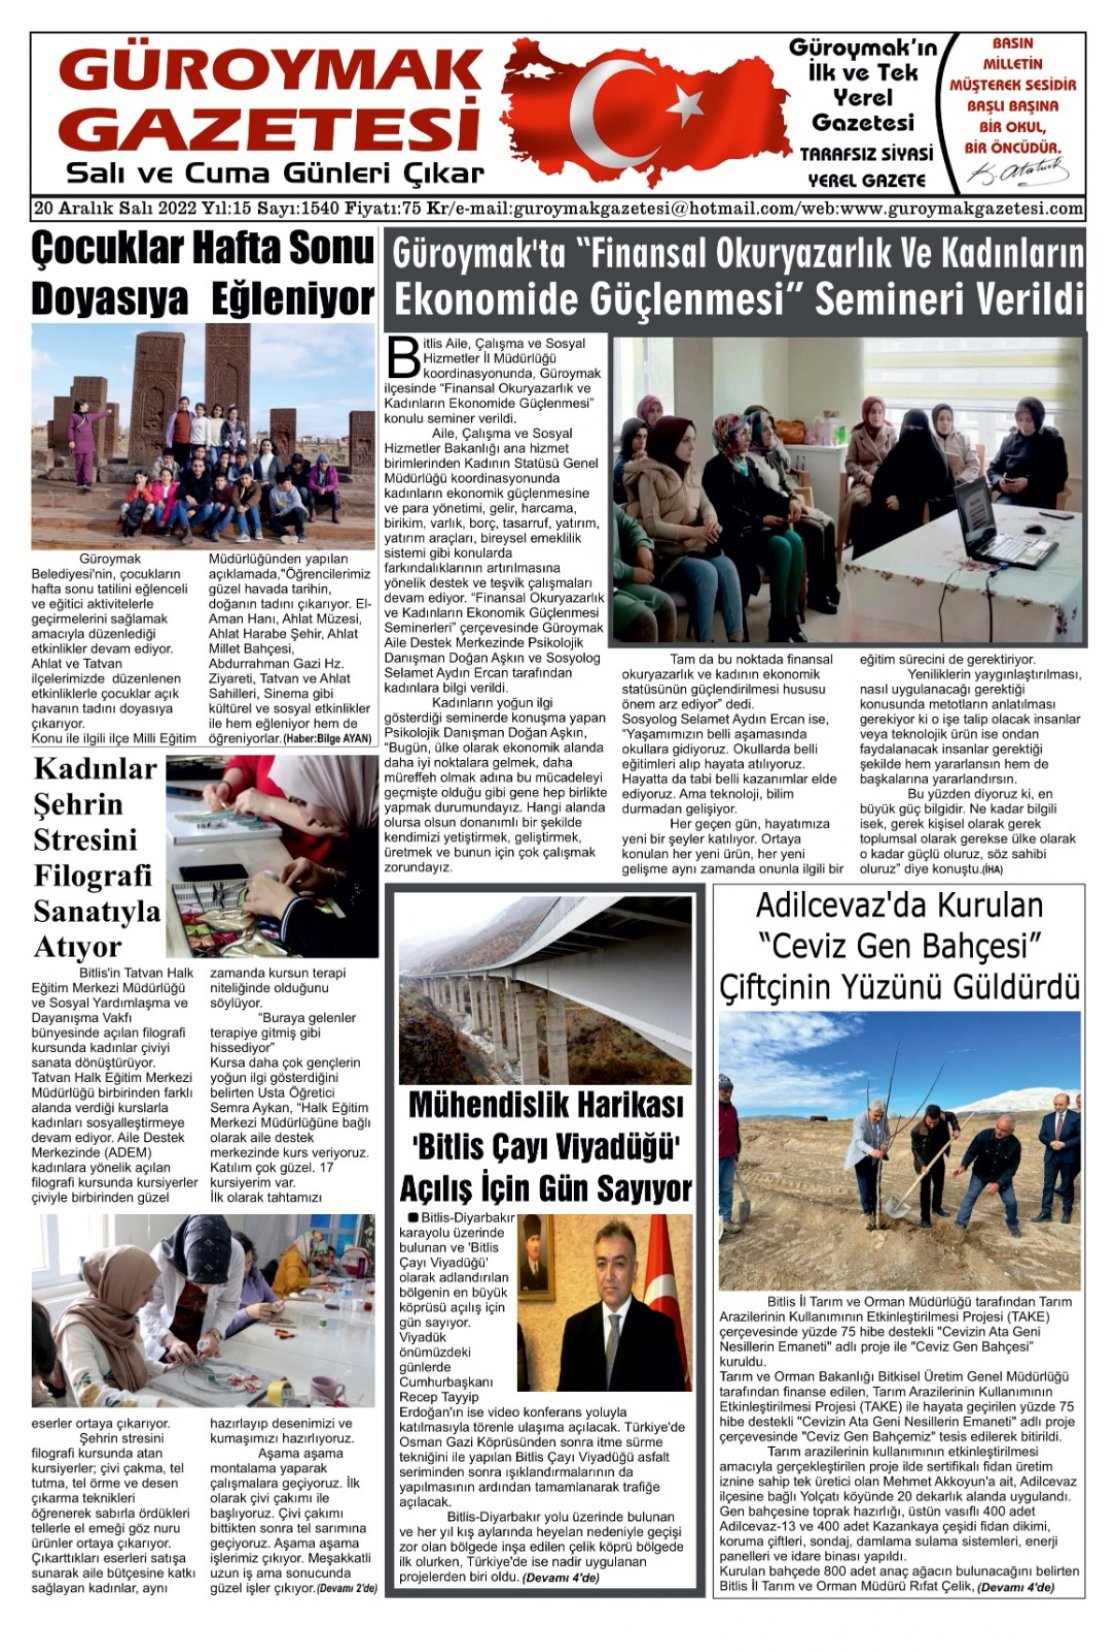 Güroymak Gazetesi IMG-20221219-WA0002.jpg Sayılı Gazete Küpürü